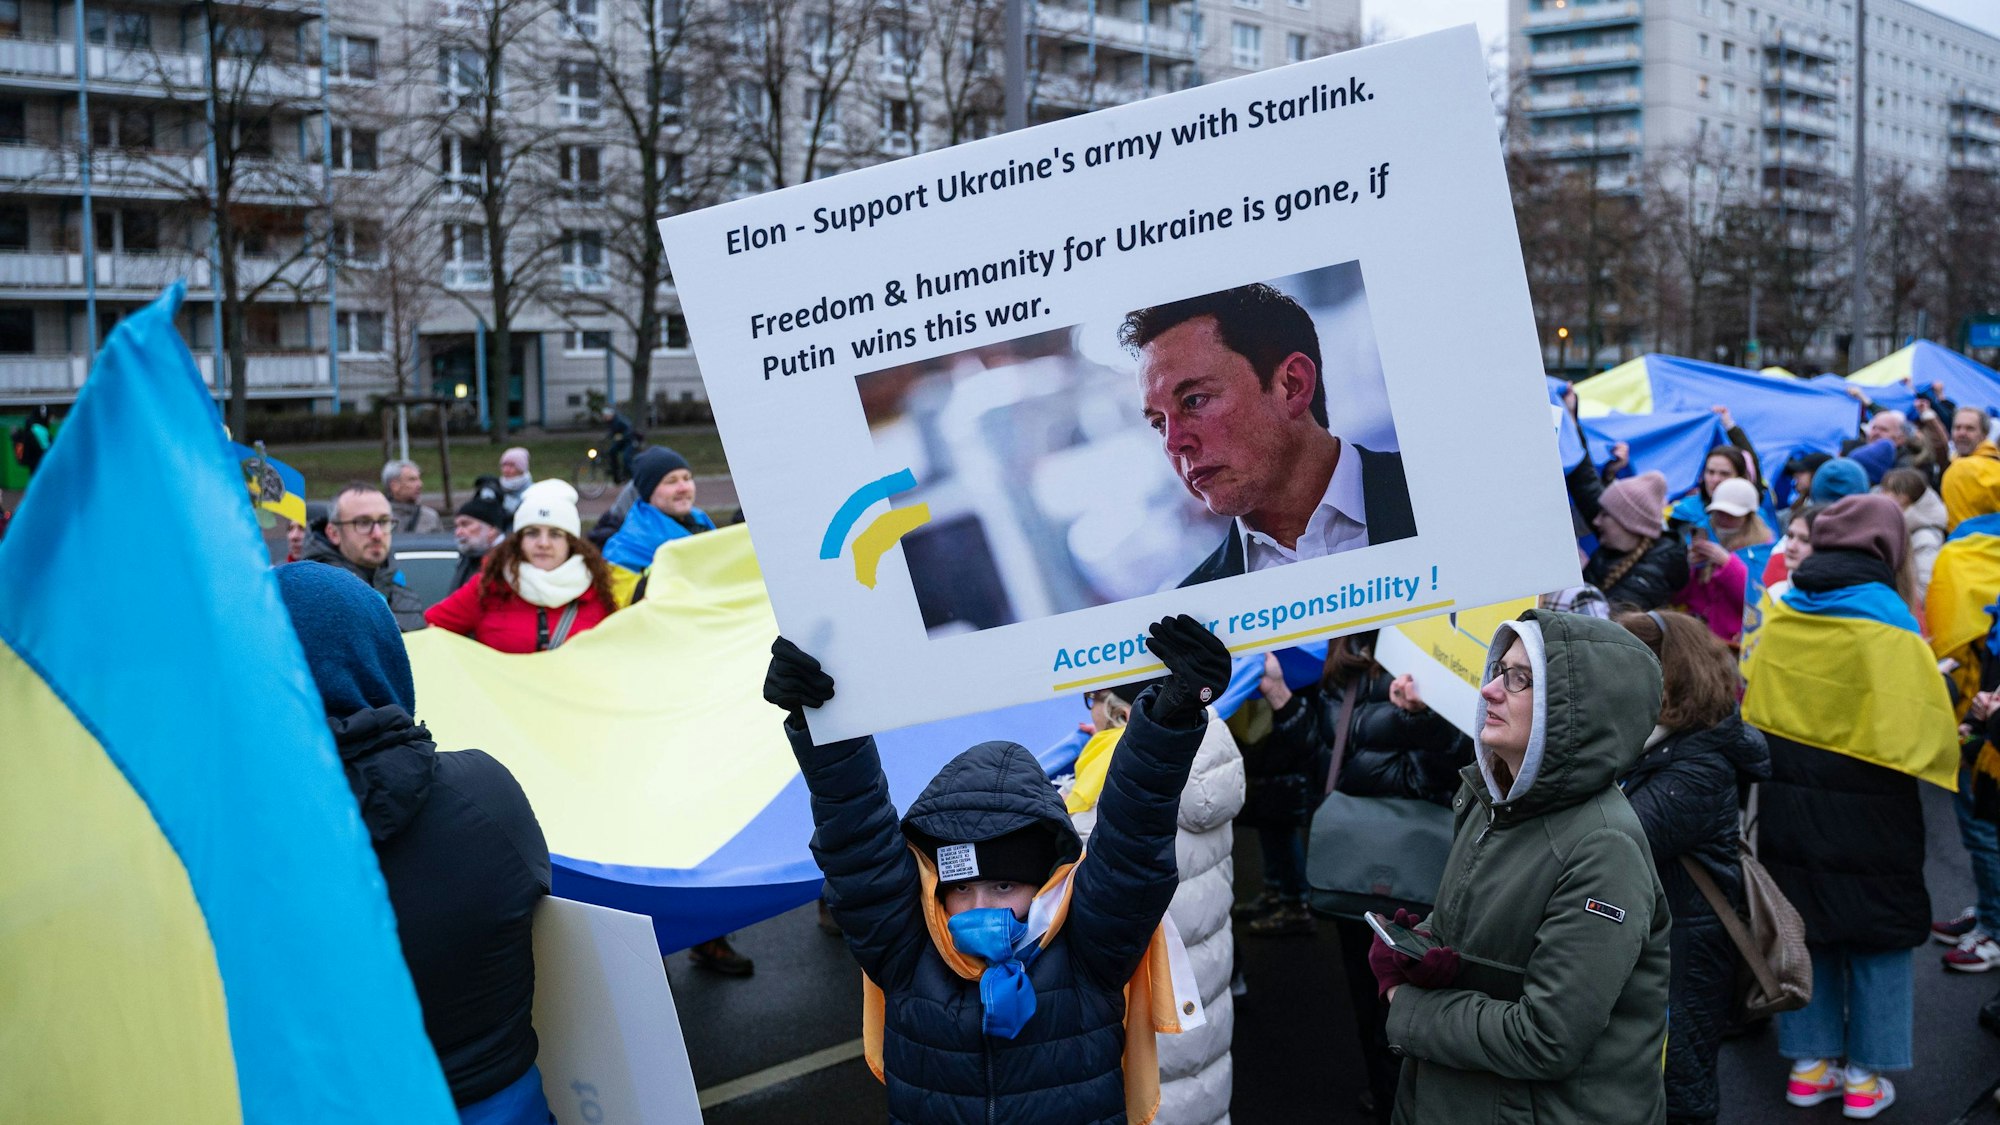 Zum Jahrestag des Kriegsbeginns von Russland in der Ukraine am 24. Februar fordern Demonstranten eine verlässliche Versorgung der ukrainischen Streitkräfte mit dem Starlink-System von Elon Musk. (Archivbild)